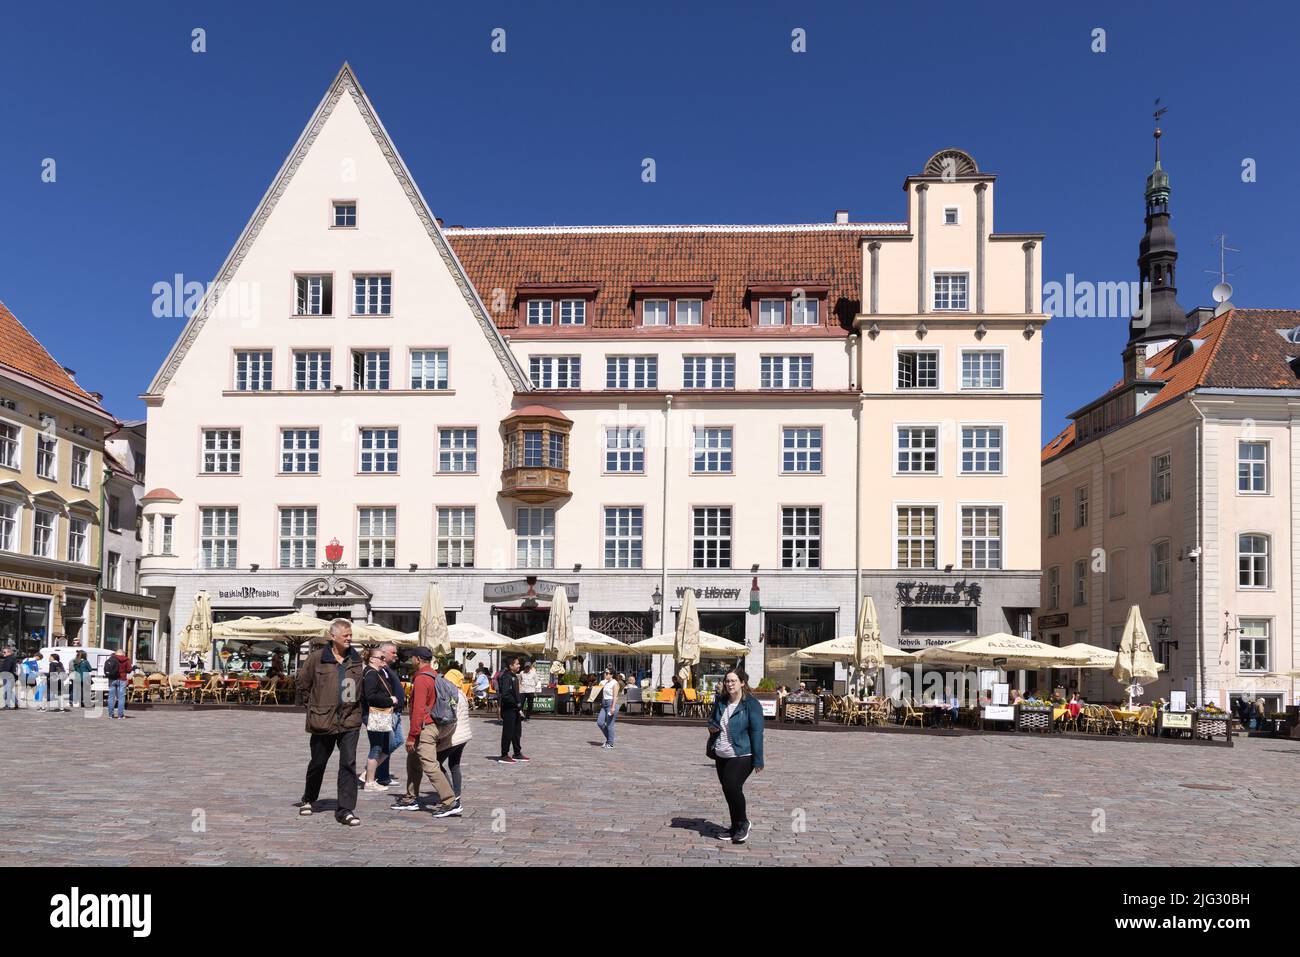 Persone nella città vecchia di Tallinn Piazza Estonia - edifici medievali del 14th secolo che circondano la vecchia piazza del municipio in estate; Tallinn, Estonia Europa Foto Stock